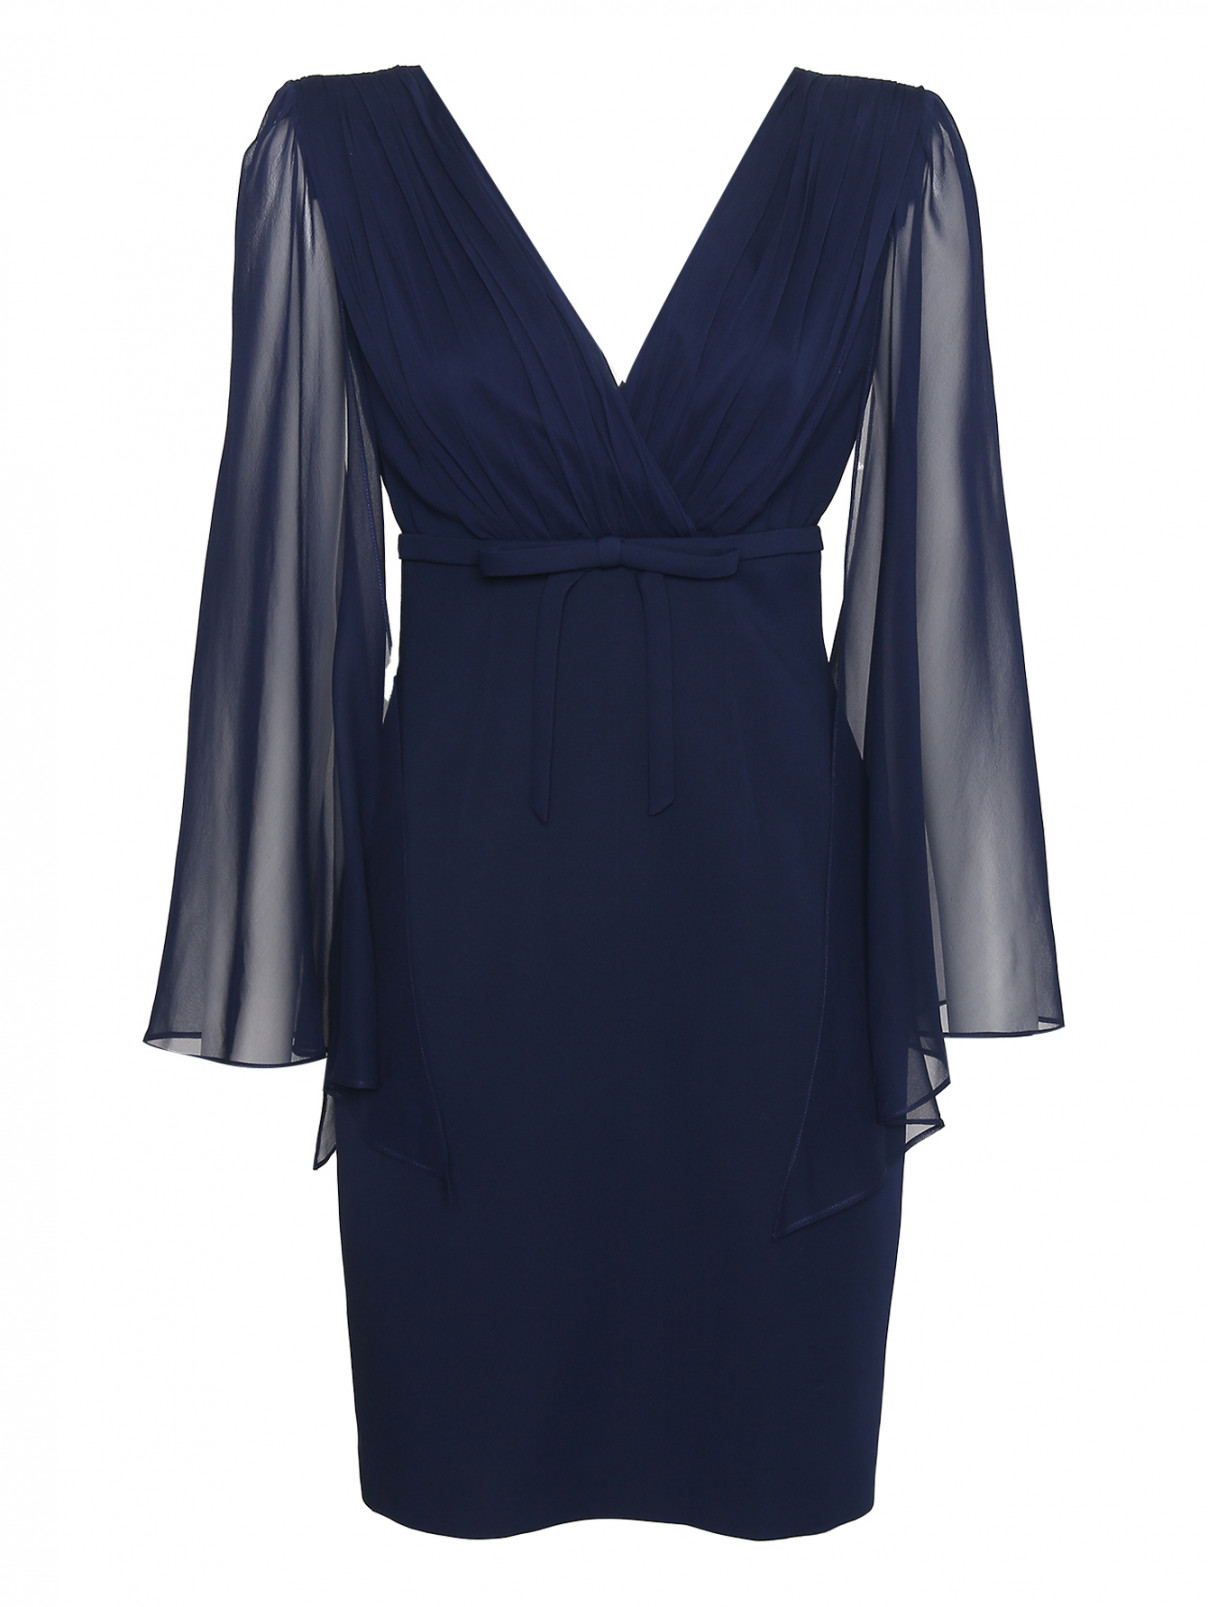 Платье из шелка с V-образным вырезом Luisa Spagnoli  –  Общий вид  – Цвет:  Синий